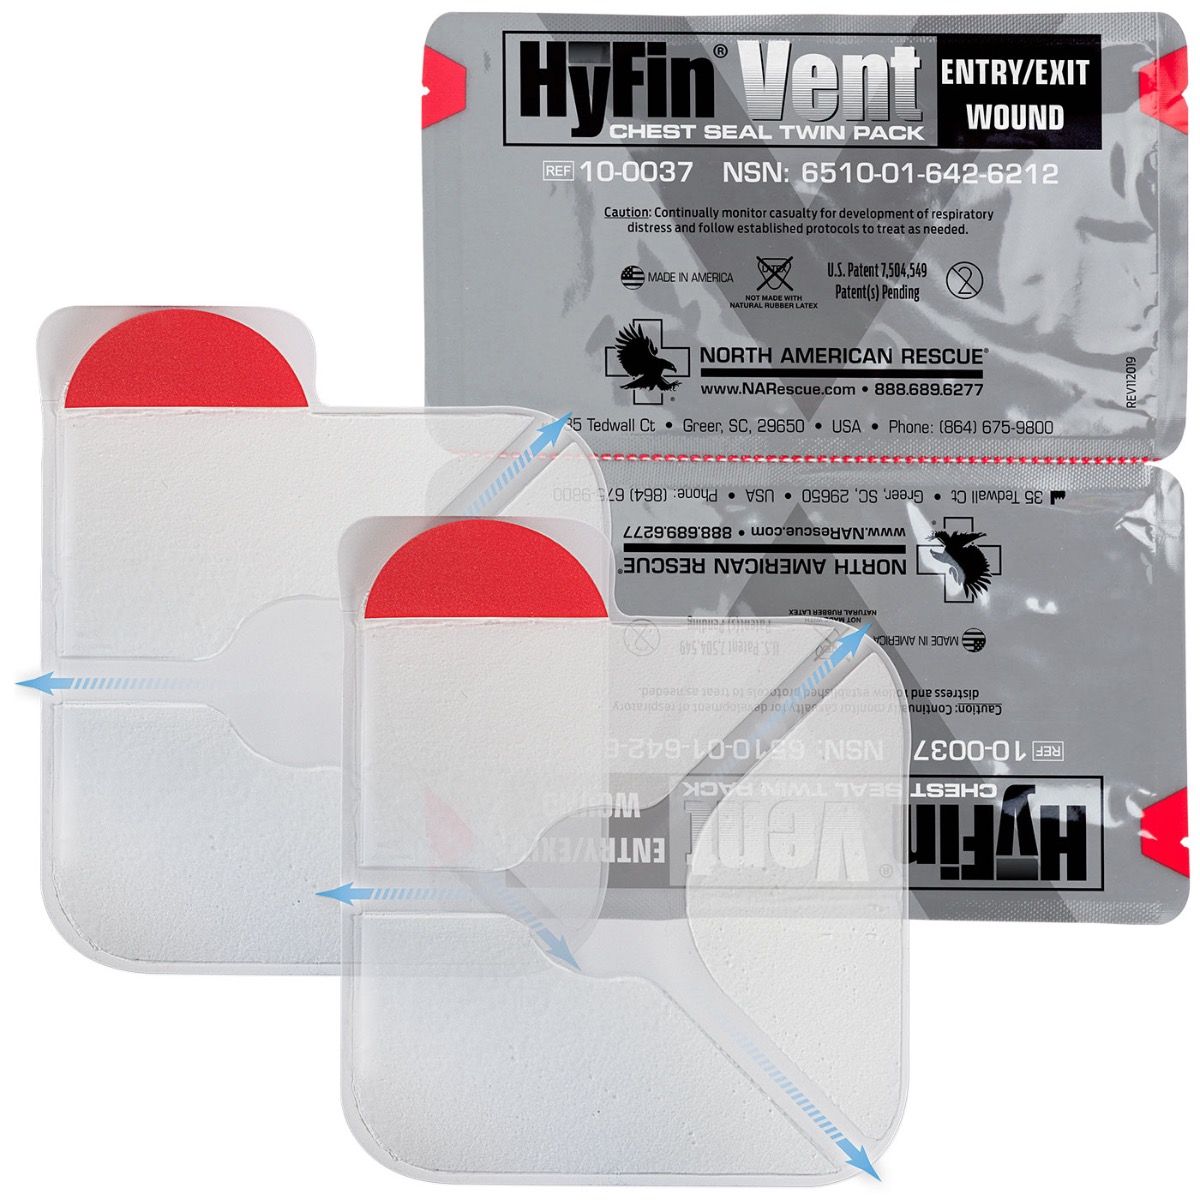 Hyfin Vent Chest Seal Twin Pack - V Development Group edc glock shirt carry aiwb appendix belt rmt tourniquet